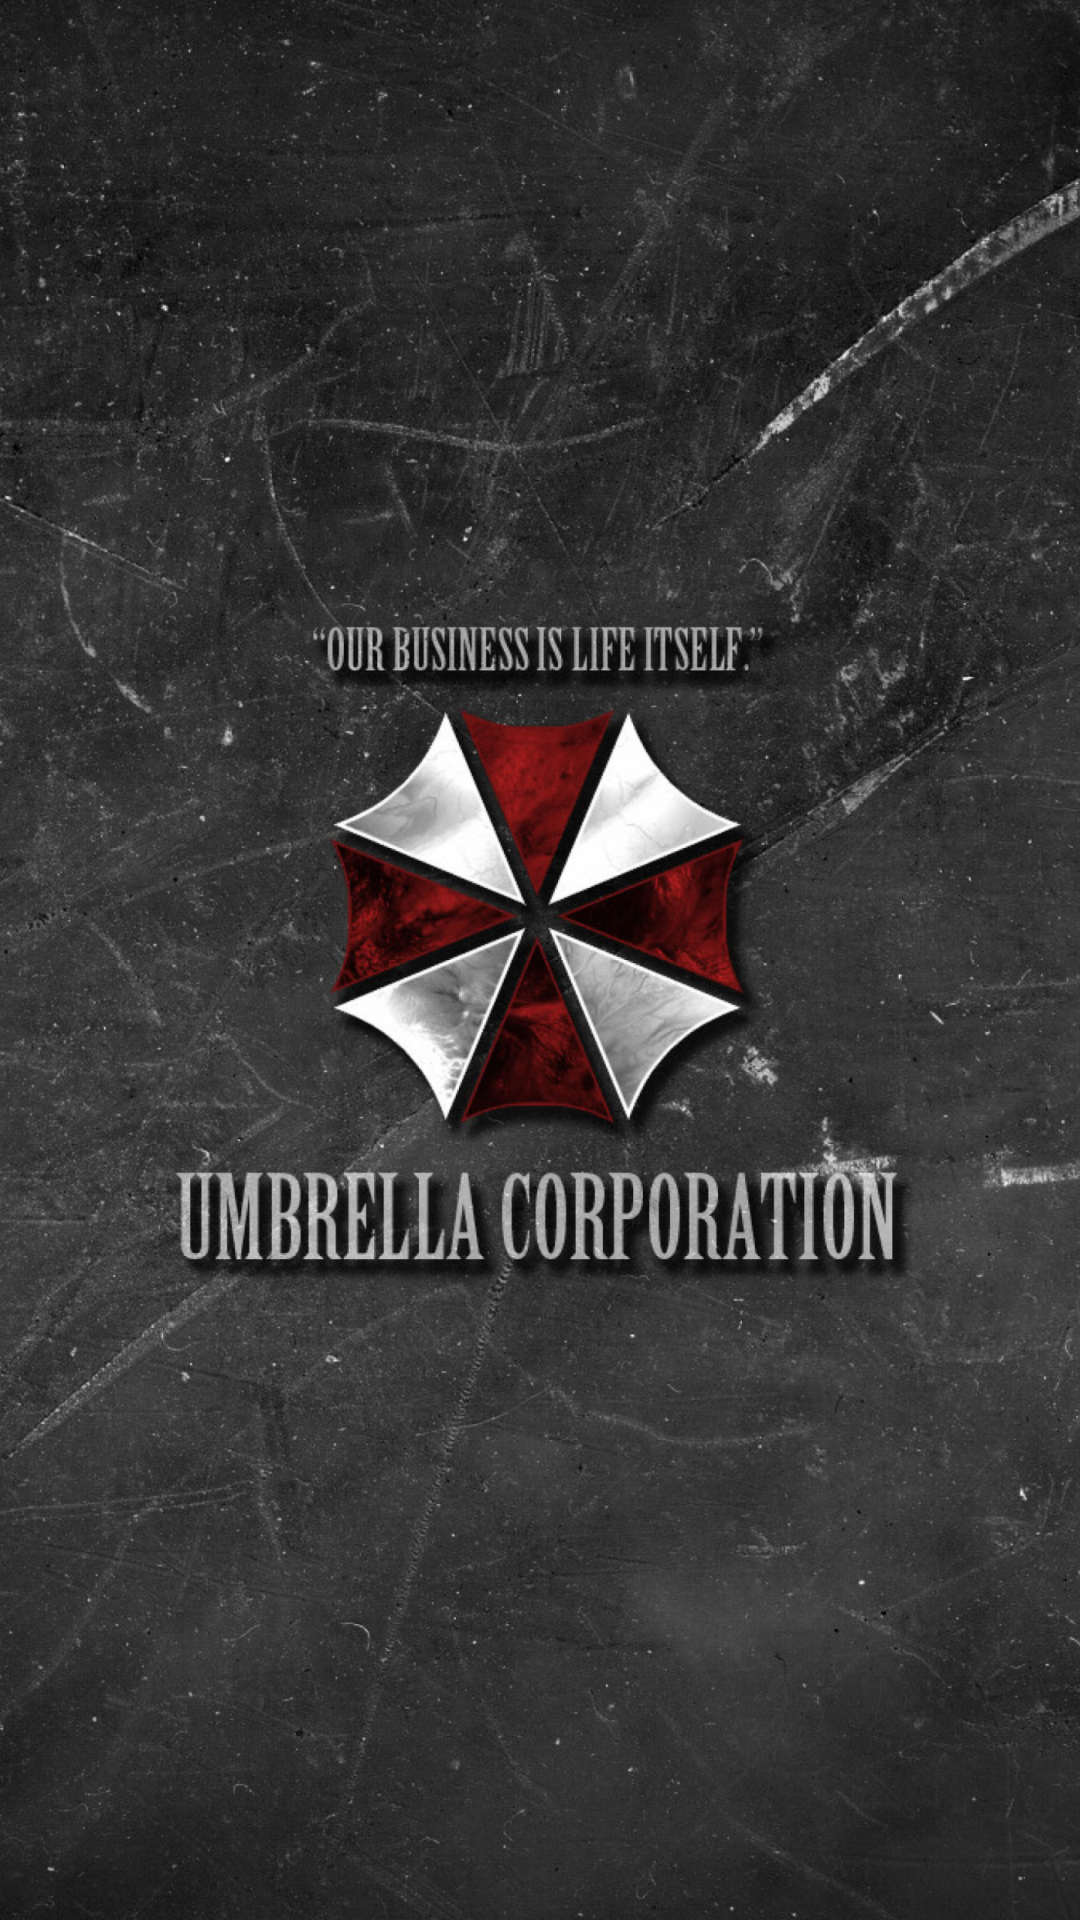 Umbrella Corporation Wallpaper for iPhone 6 Plus